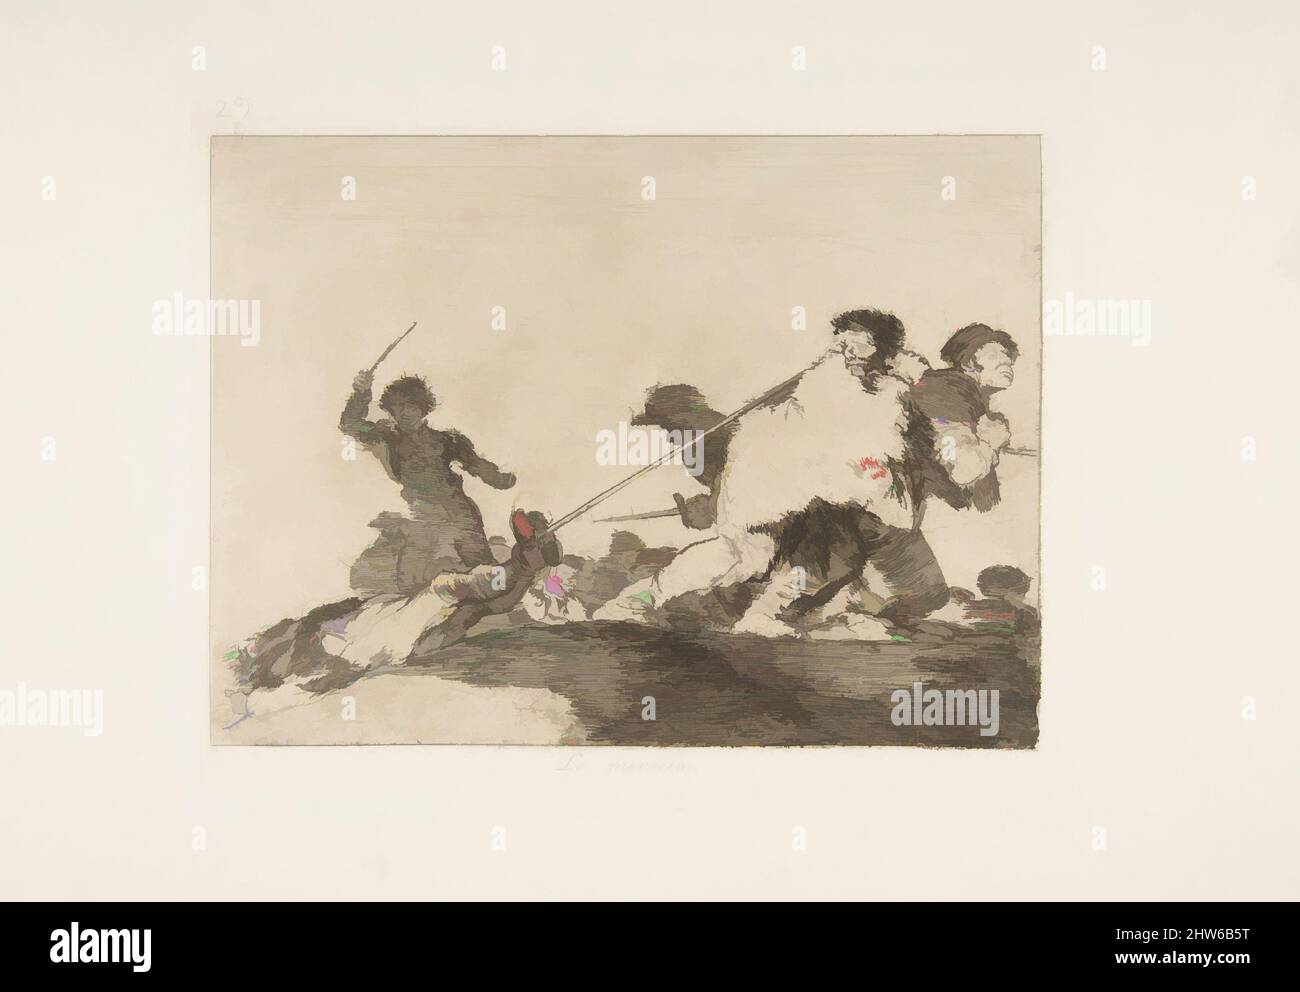 Art inspiré par la planche 29 de 'les désastres de la guerre' (Los Desastres de la Guerra): 'Il méritait' (Lo merecia), 1810 ( publié en 1863), Etching, Drypoint, burin et burnisher, plaque: 6 7/8 × 8 1/2 in. (17,4 × 21,6 cm), Prints, Goya (Francisco de Goya y Lucientes) (espagnol, oeuvres classiques modernisées par Artotop avec une touche de modernité. Formes, couleur et valeur, impact visuel accrocheur sur l'art émotions par la liberté d'œuvres d'art d'une manière contemporaine. Un message intemporel qui cherche une nouvelle direction créative. Artistes qui se tournent vers le support numérique et créent le NFT Artotop Banque D'Images